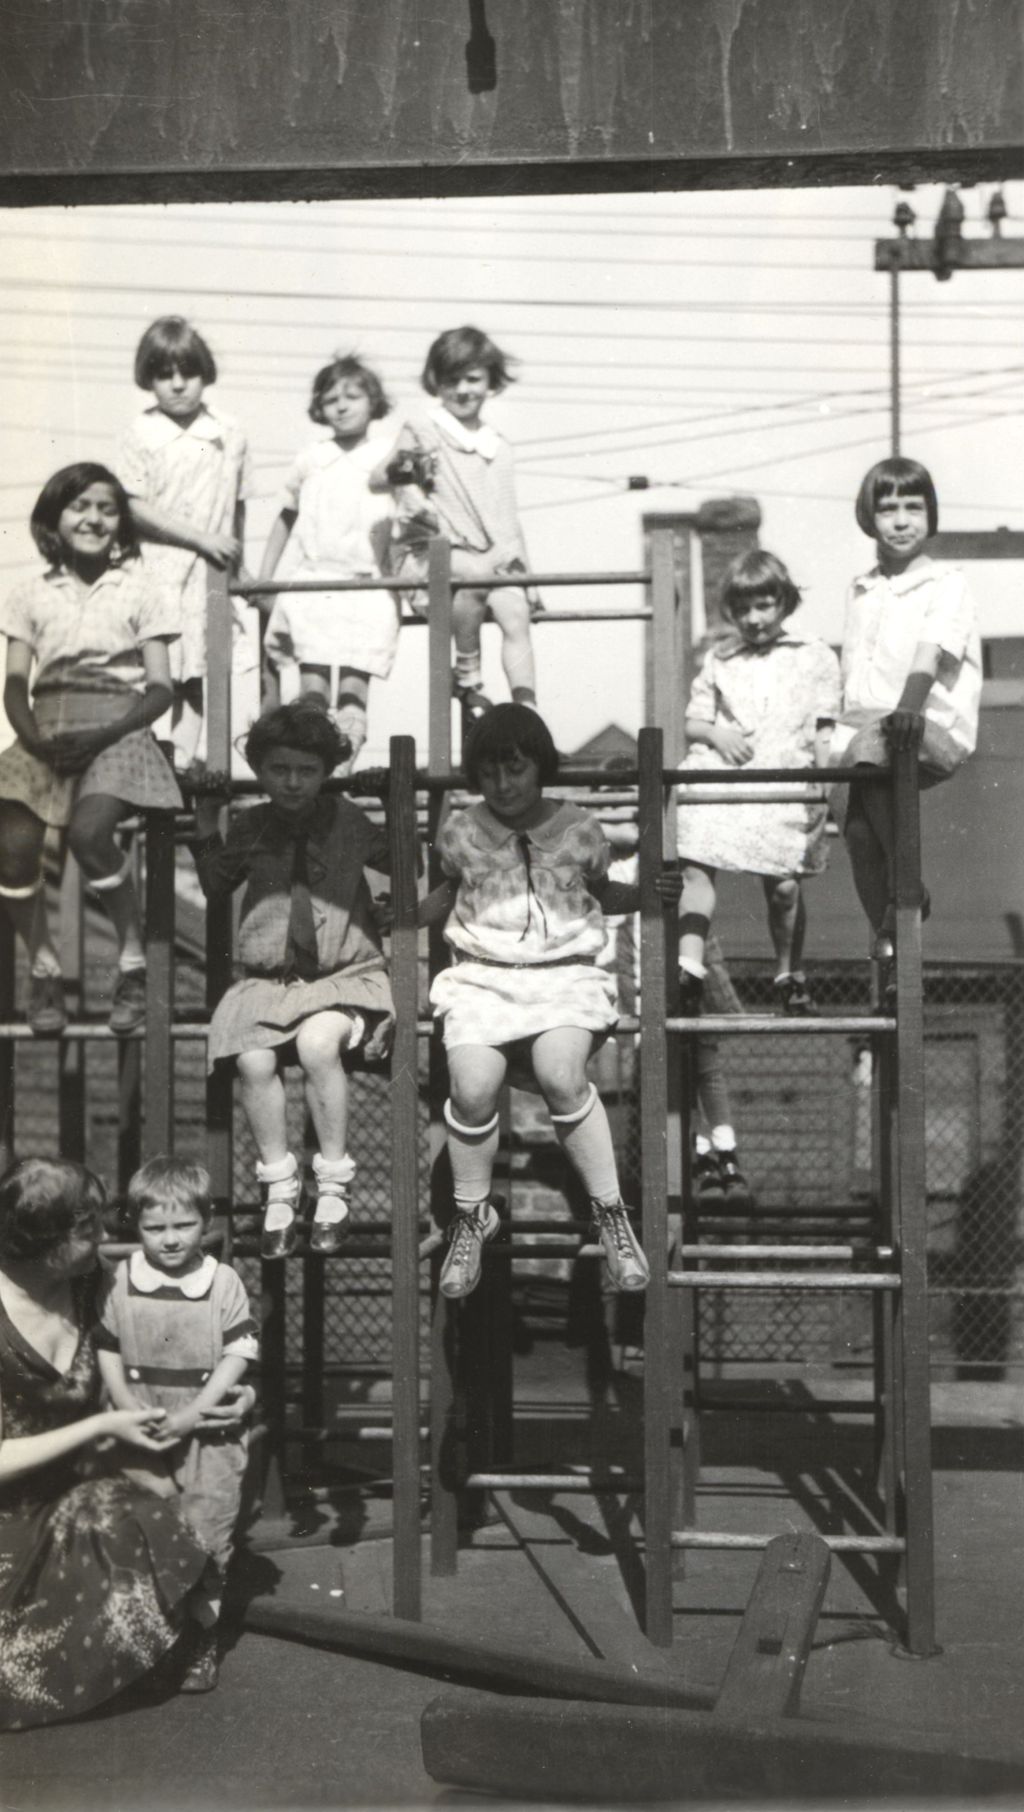 Children on playground climbing structure